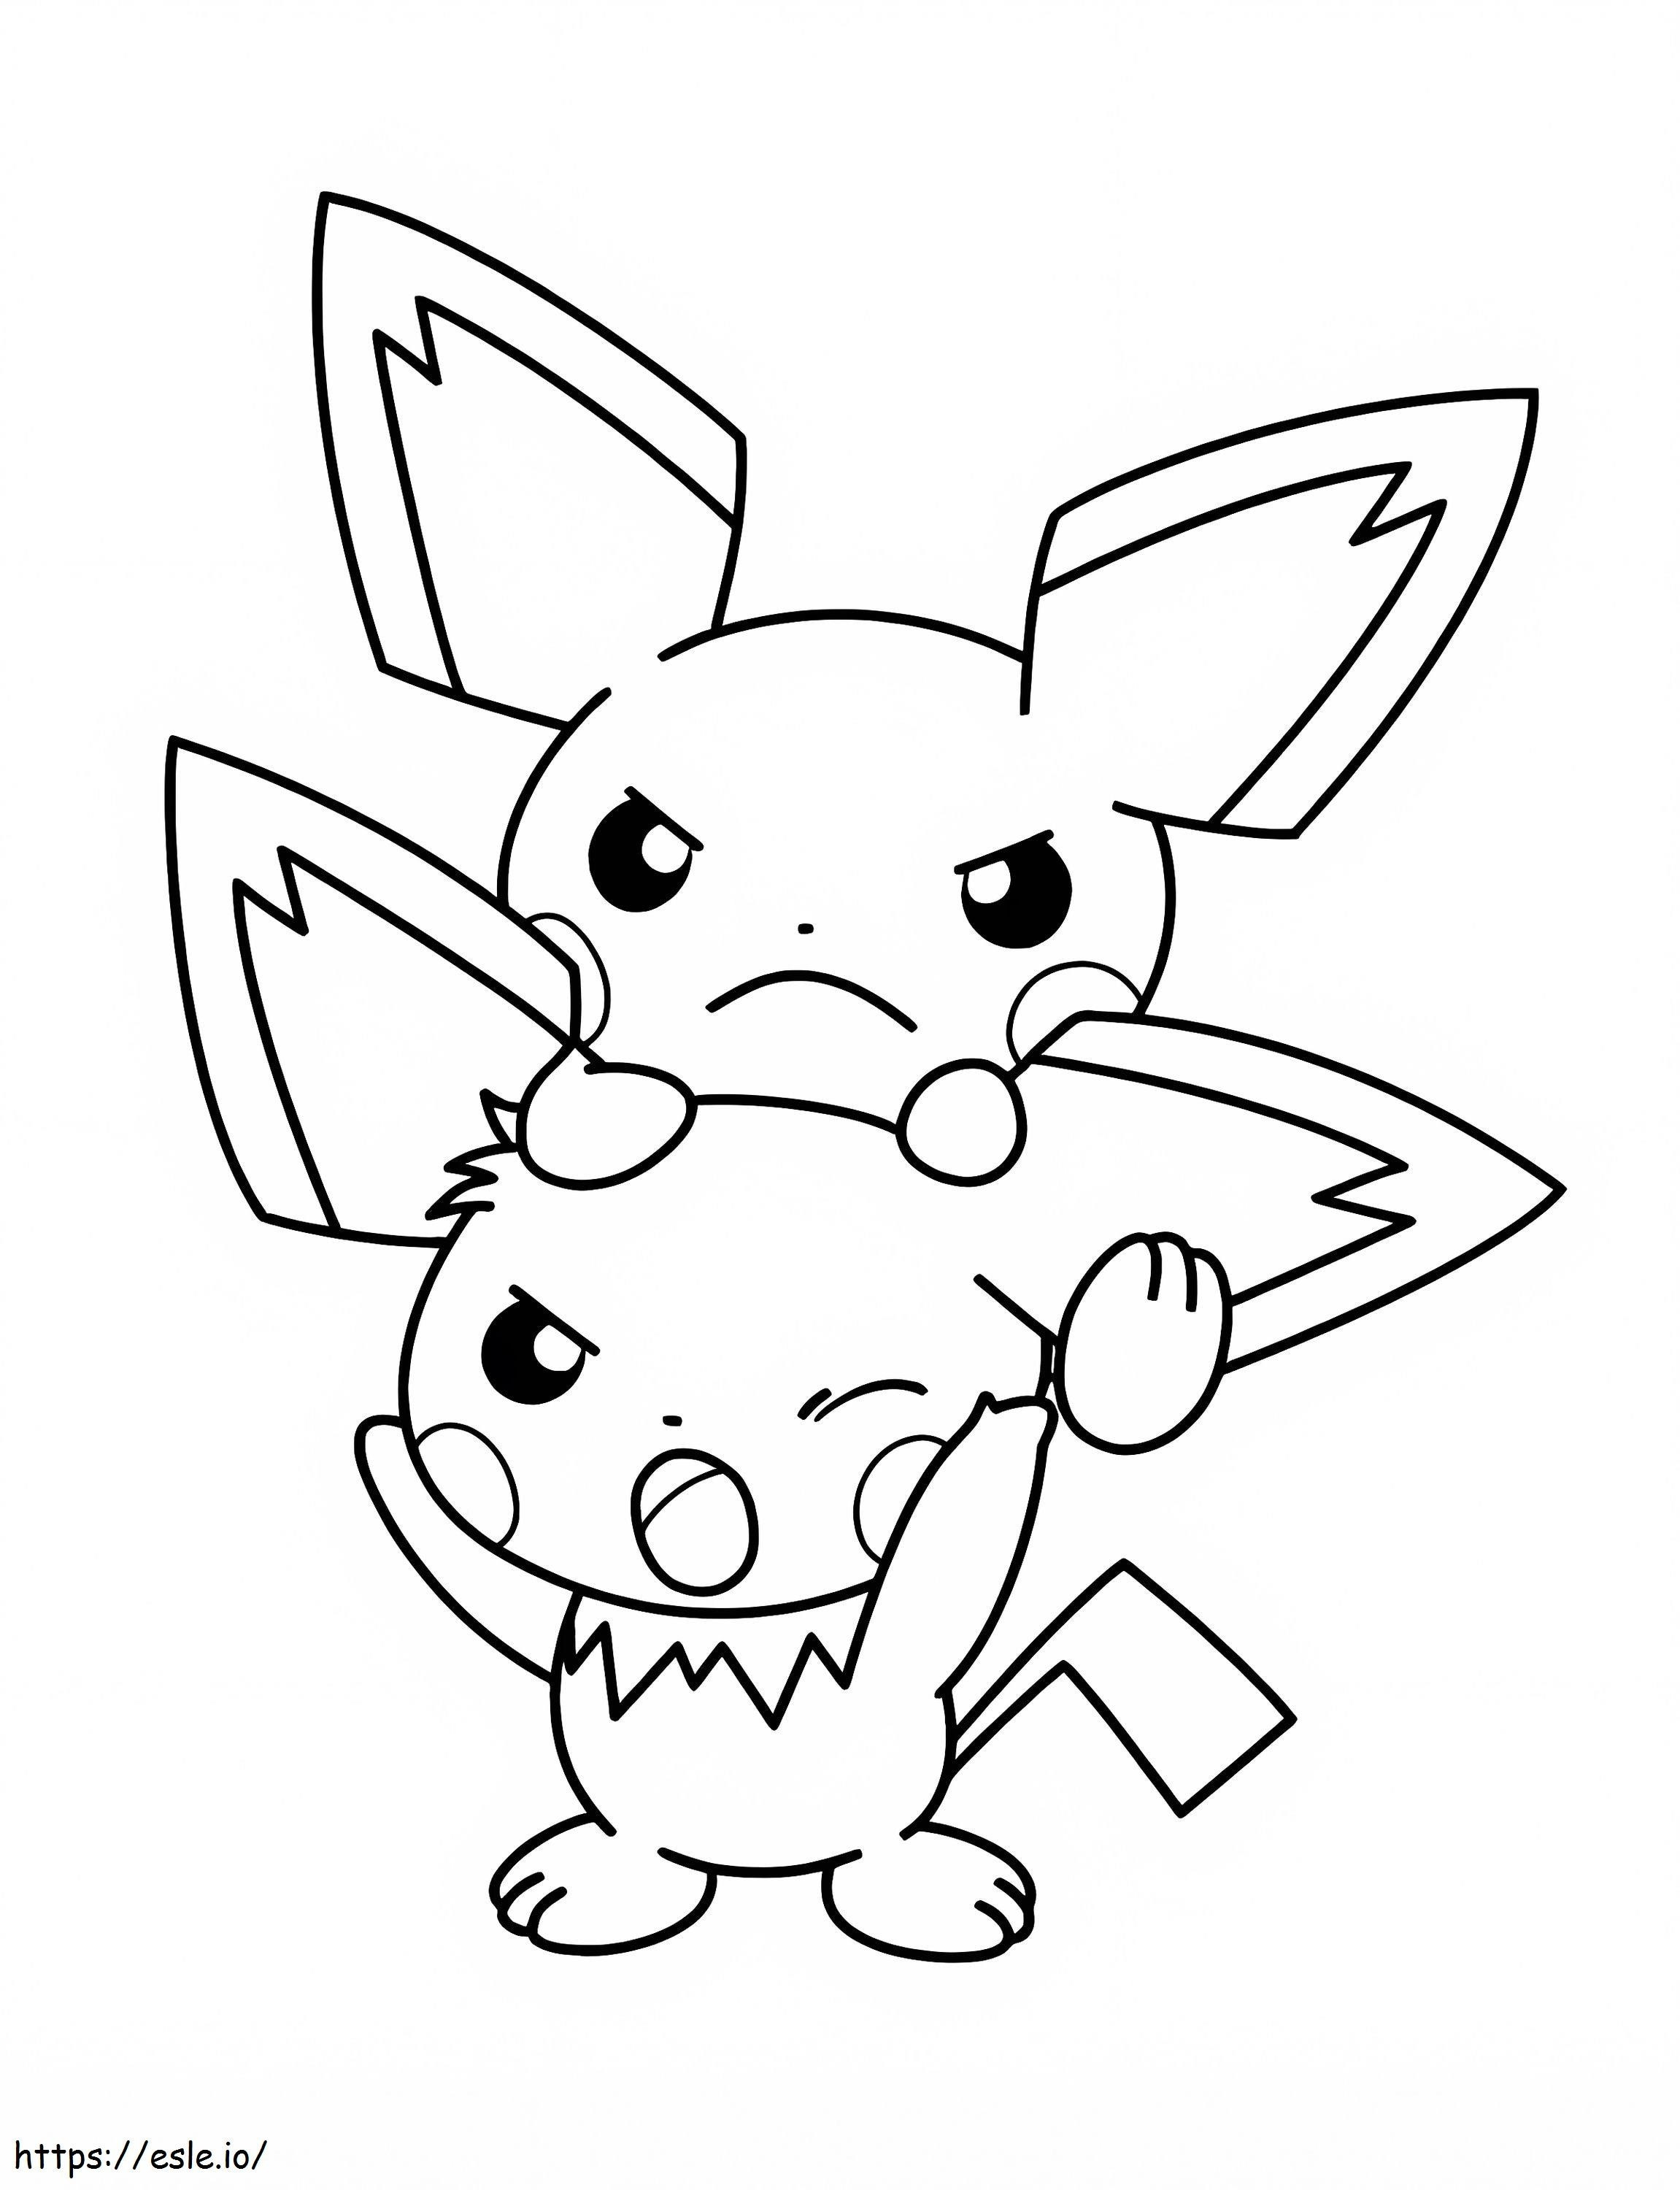 Pichu e Pikachu com raiva para colorir